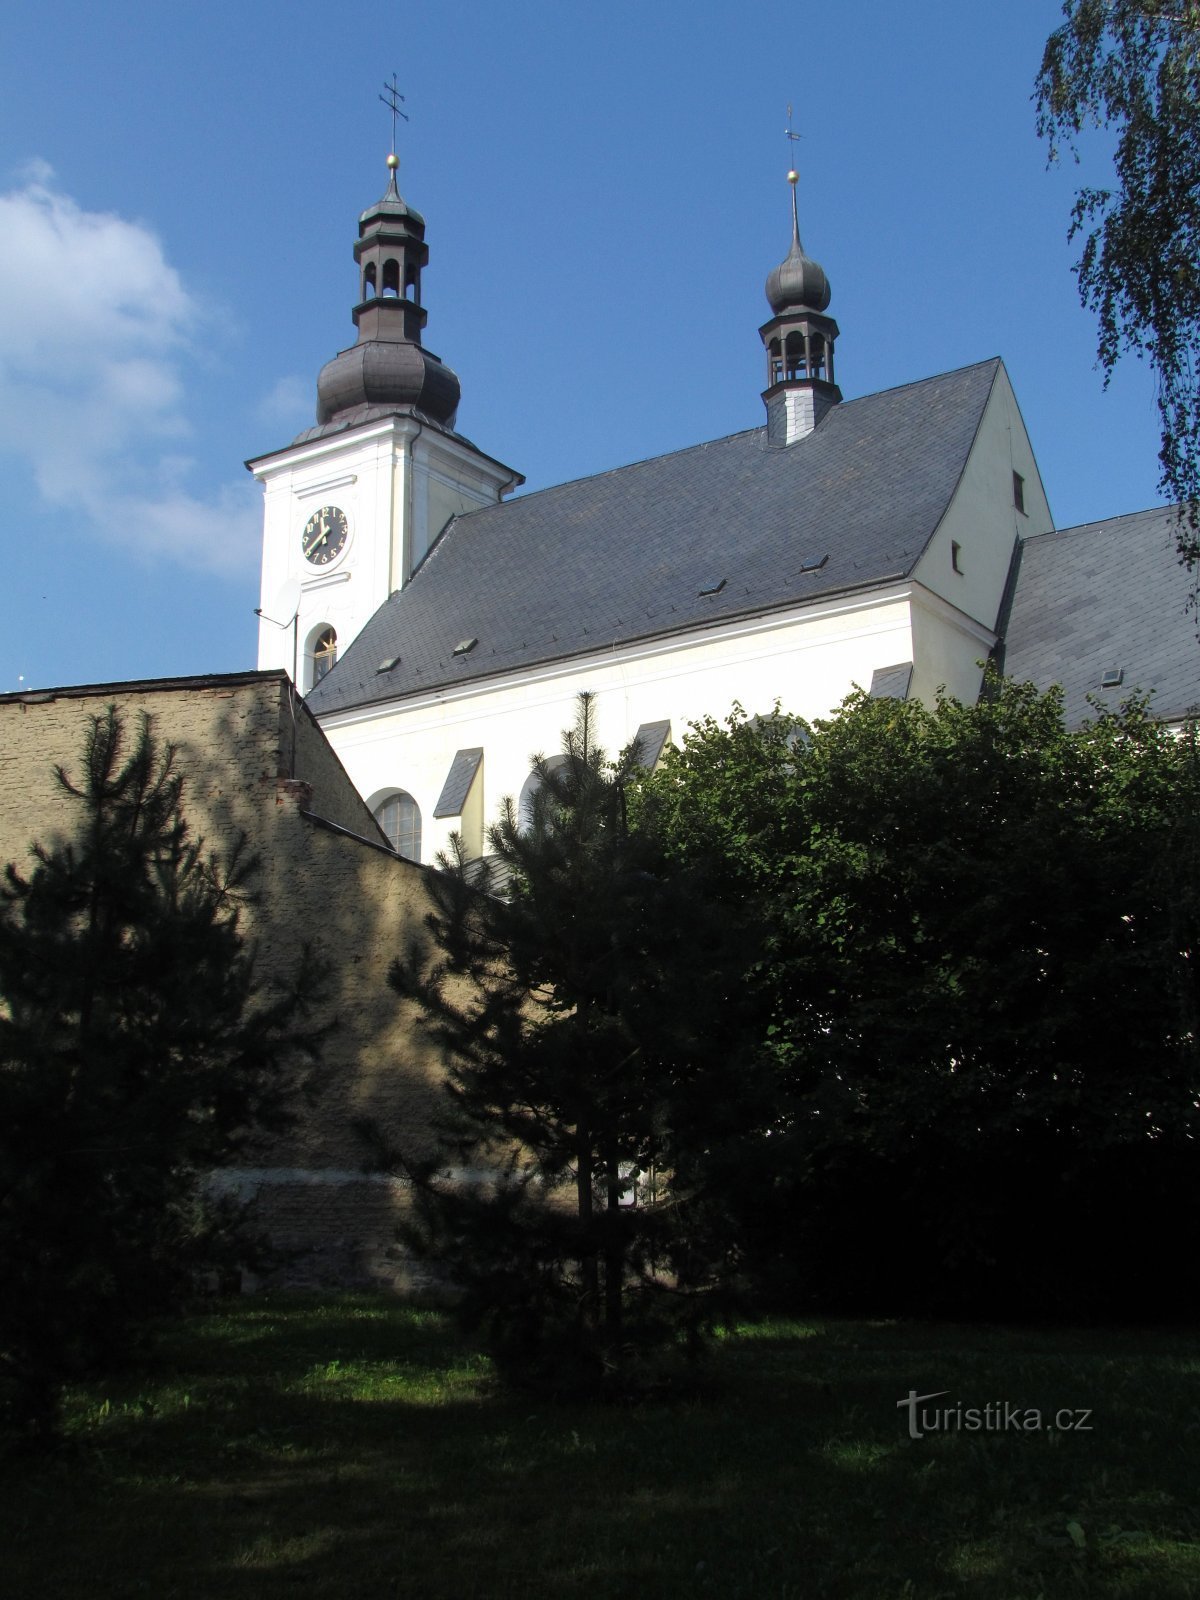 Odry - Szent Bertalan templom